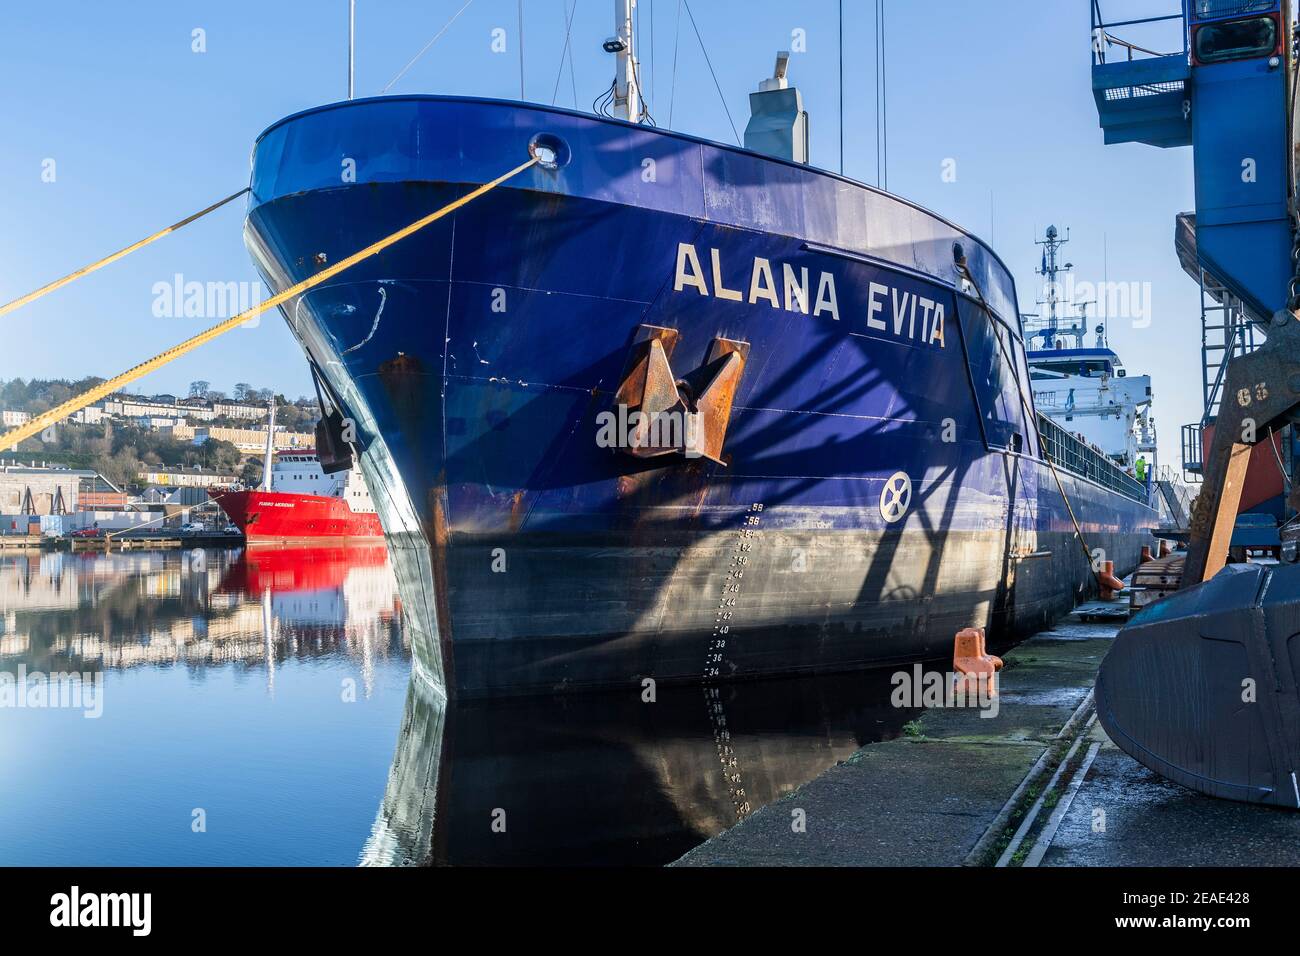 La General Cargo Ship "Alana evita" scarica il suo carico di mangimi per animali a Kennedy Quay, porto di Cork, Irlanda. Foto Stock